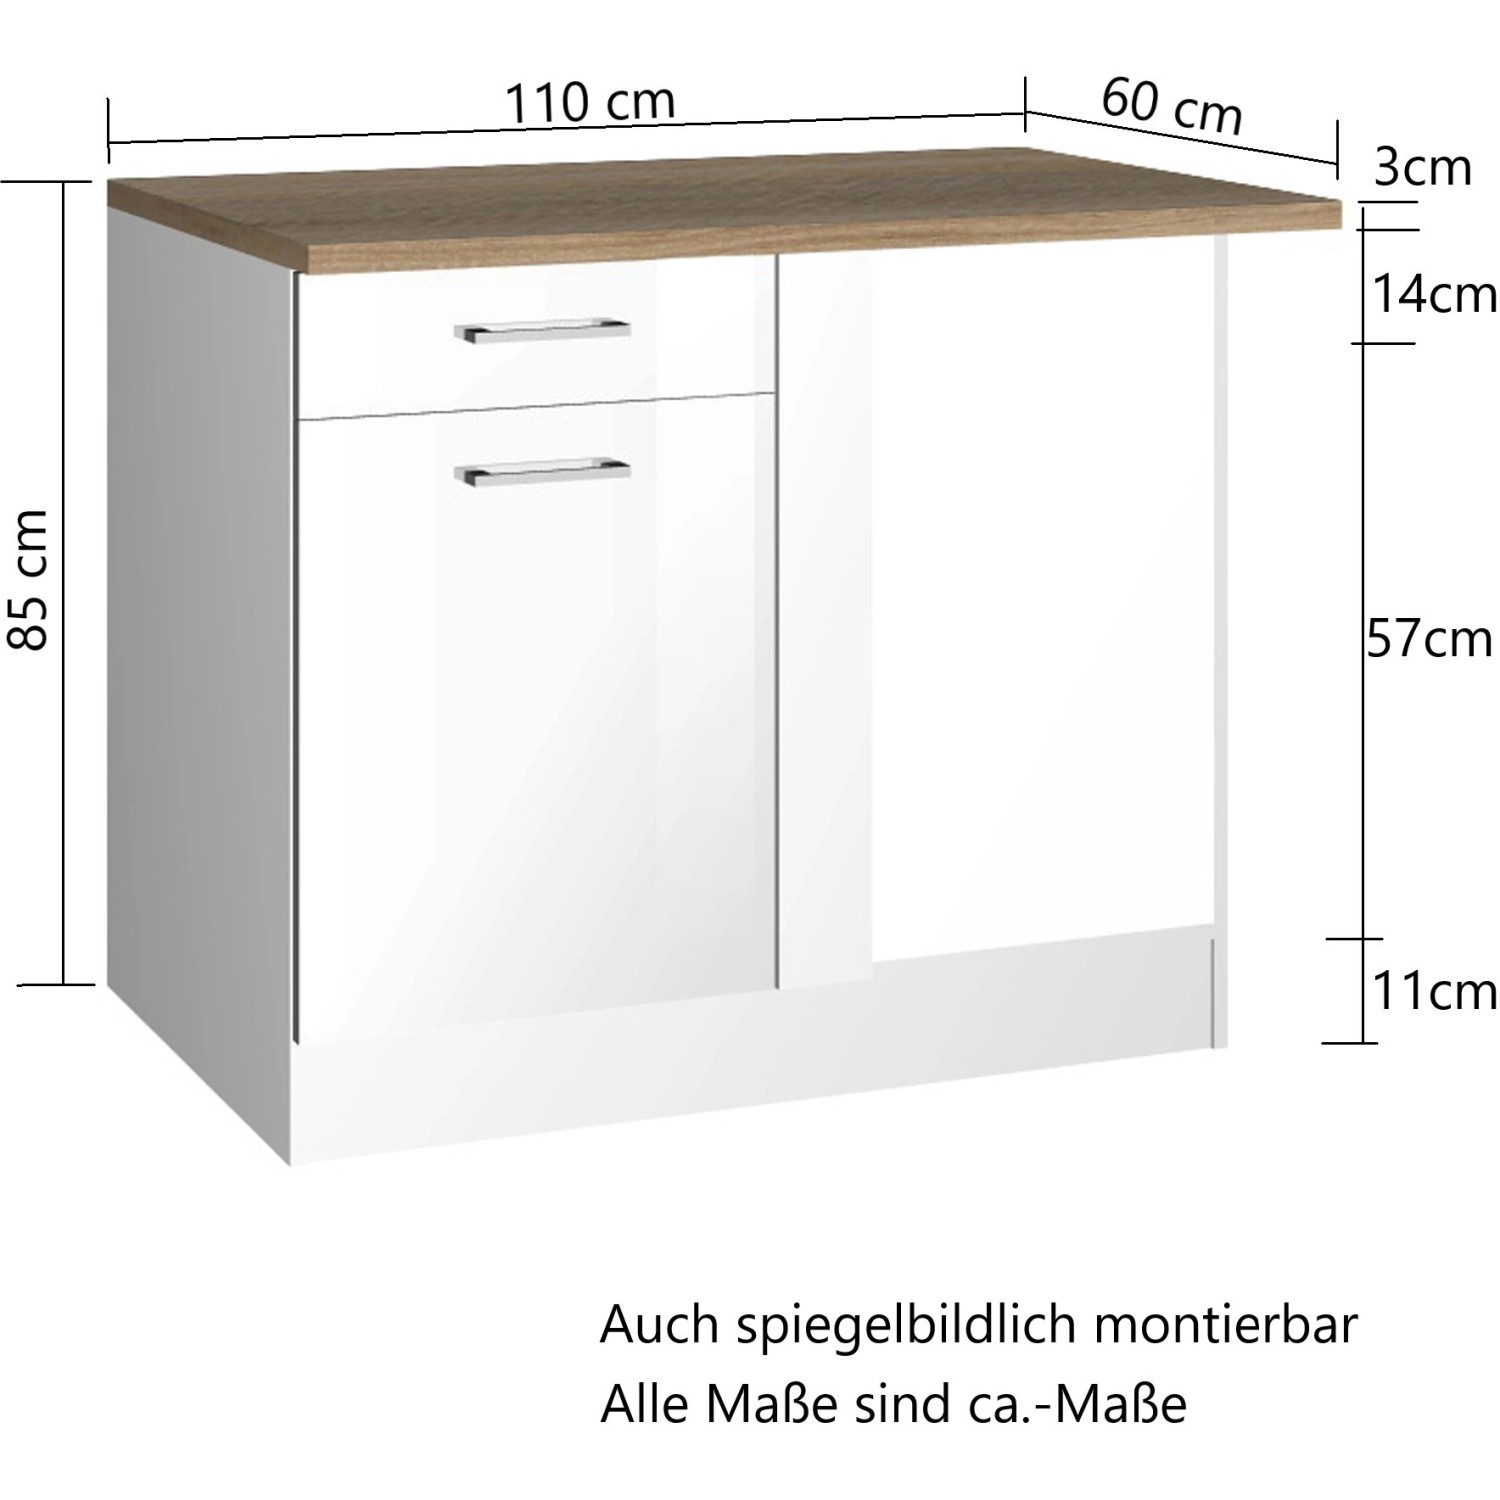 Held Möbel Küchen-Eckschrank Mailand 110 OBI bei Hochglanz kaufen Weiß/Weiß cm